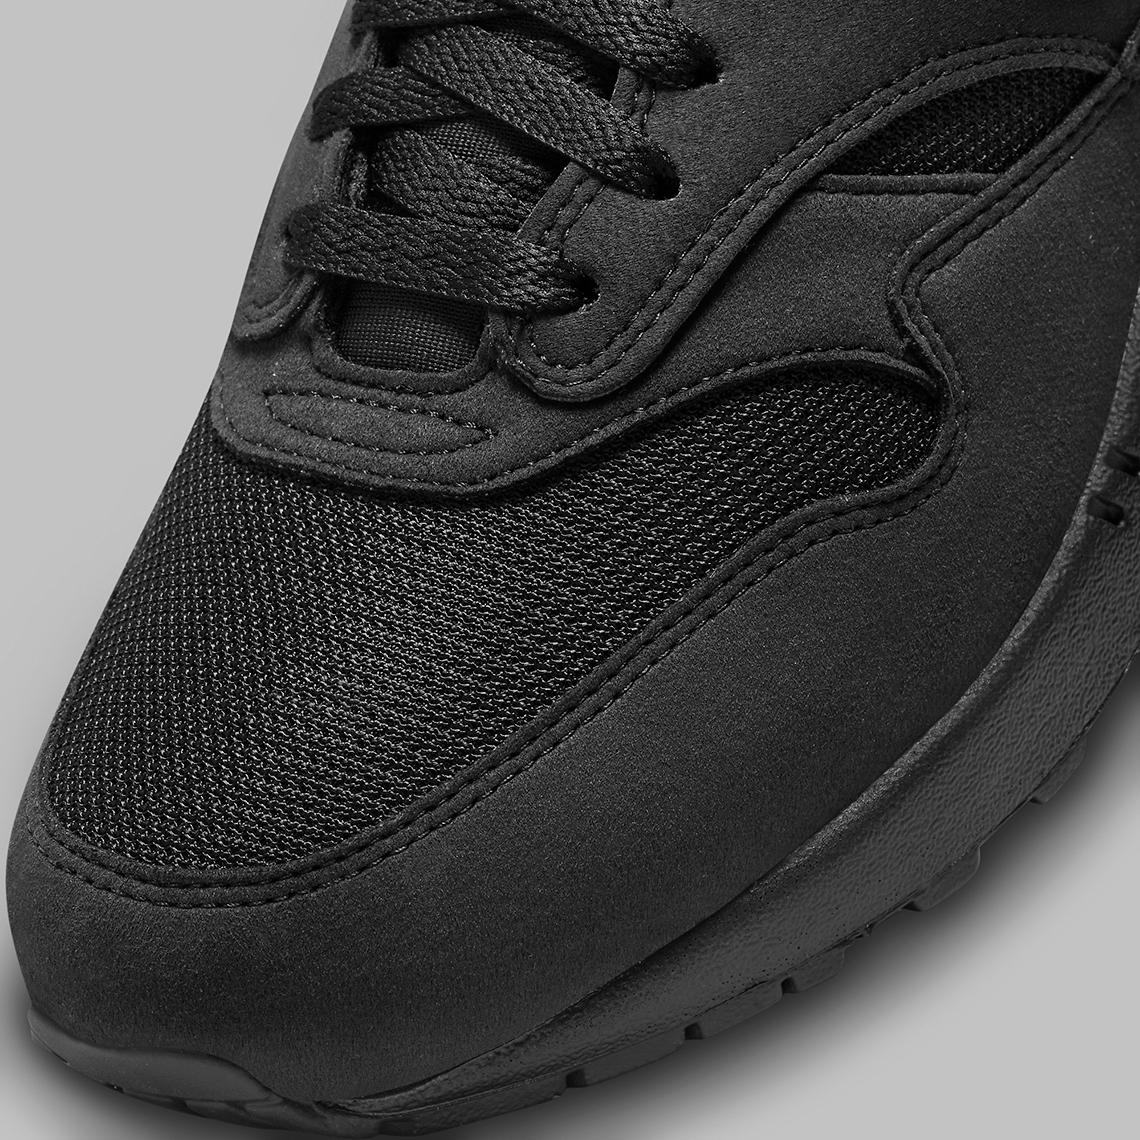 1693151767 634 El Nike Air Max 1 aparece en blanco y negro